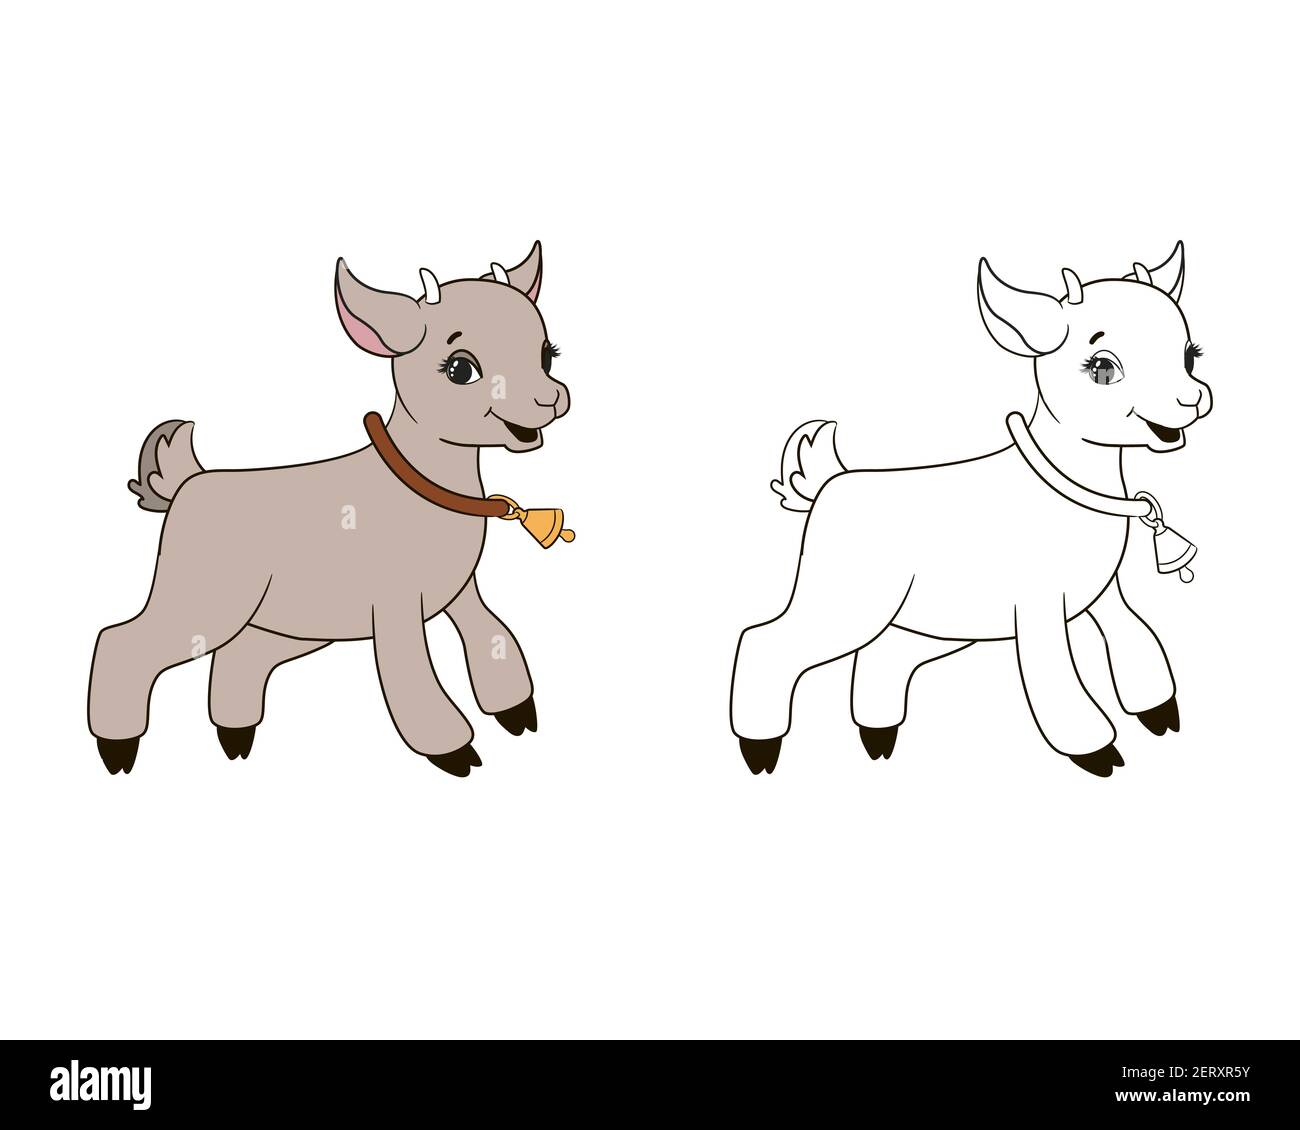 livre de coloriage, en chiffres, une petite chèvre saute en sonnant une cloche. Illustration vectorielle de style dessin animé, dessin au trait pour les petits Illustration de Vecteur